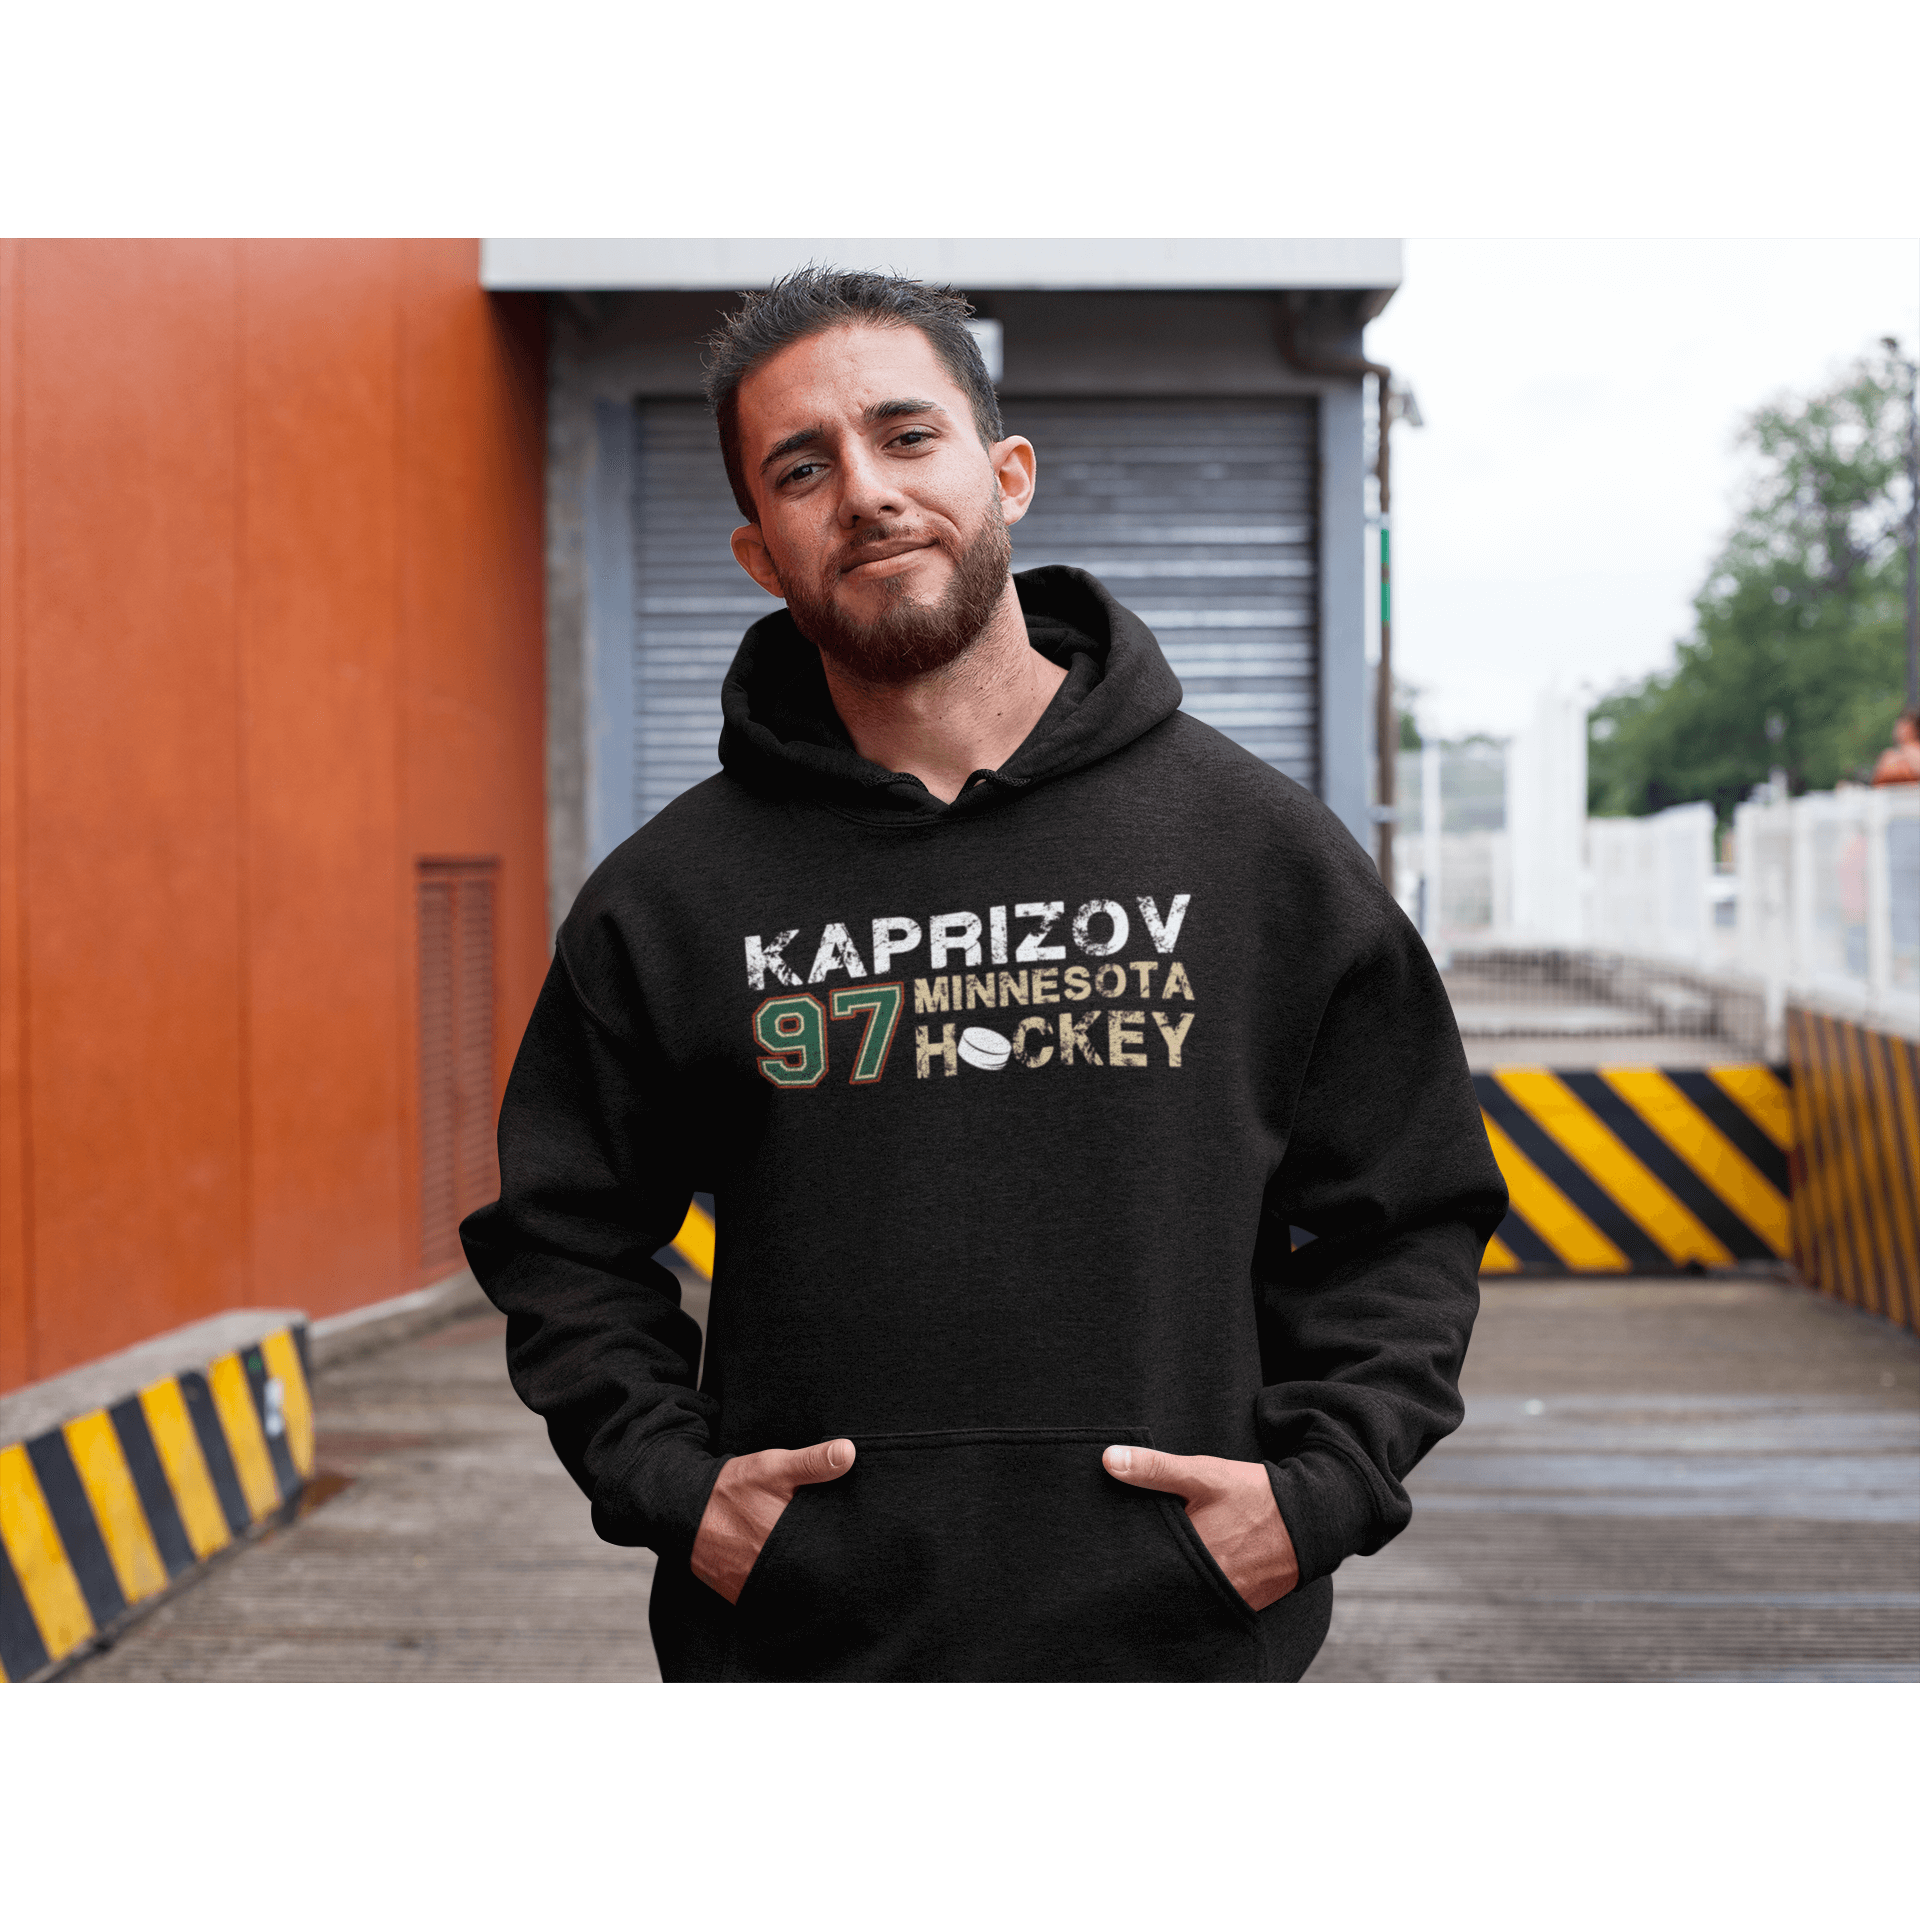 Kaprizov 97 Minnesota Hockey Unisex Hooded Sweatshirt